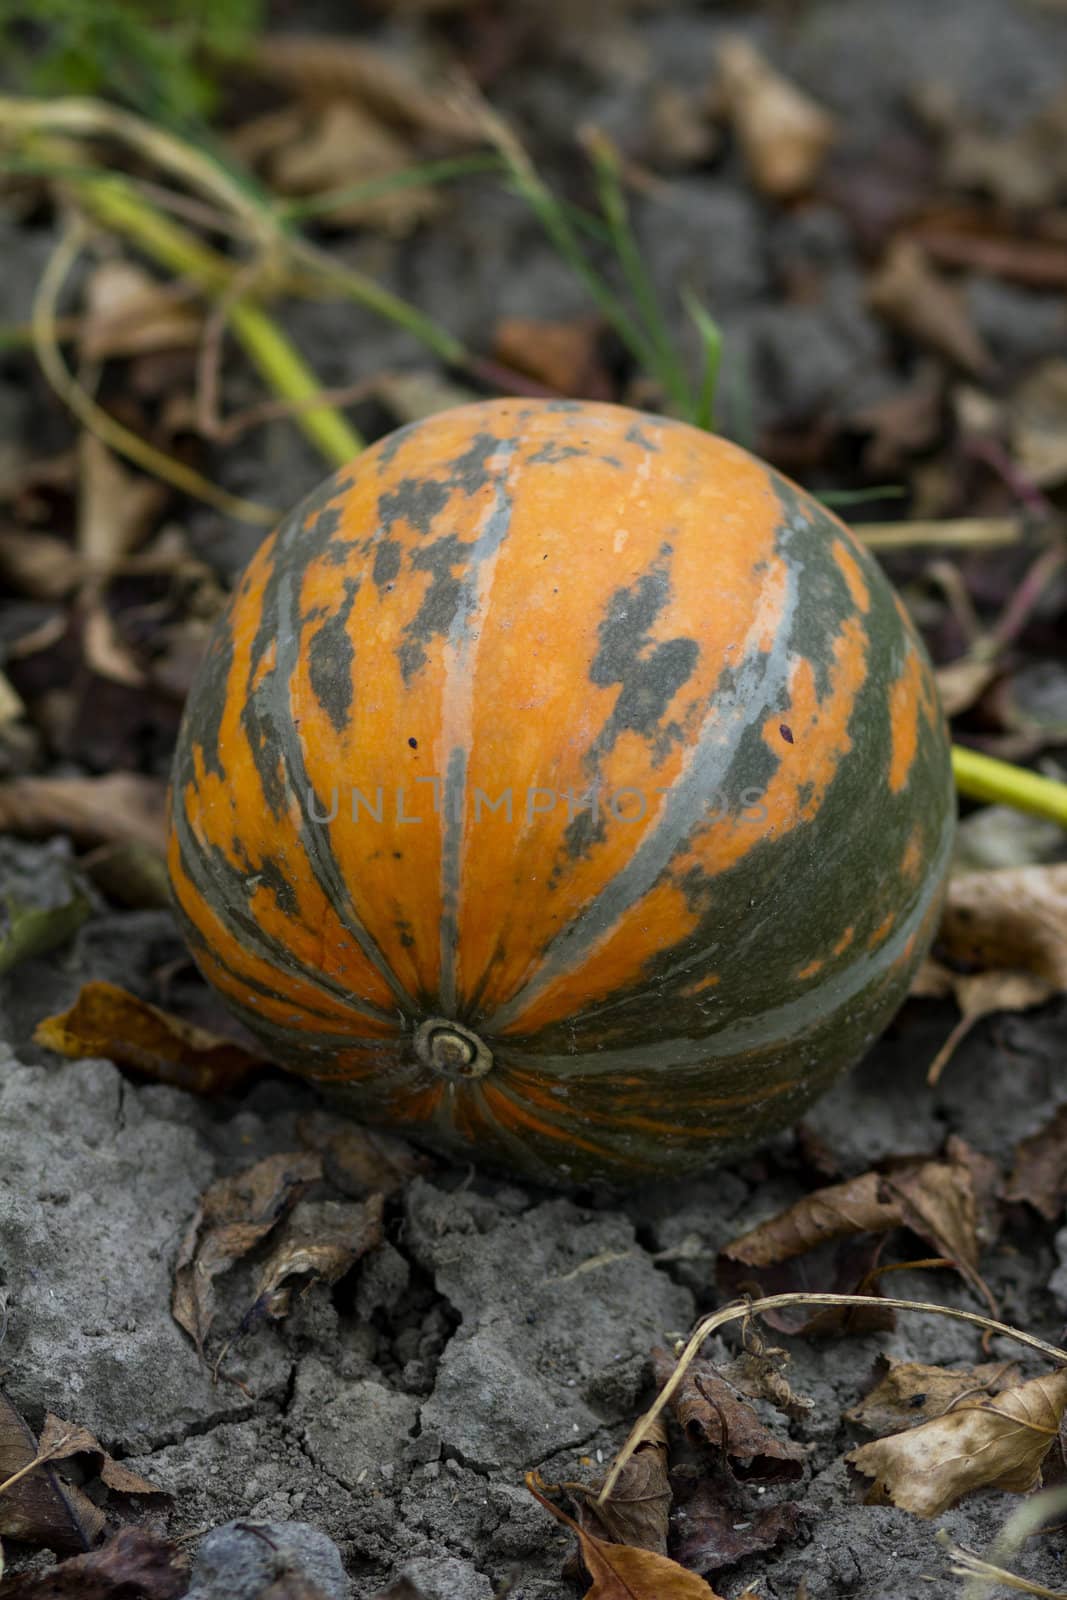 Big, orange coloured organic pumpkin in the field